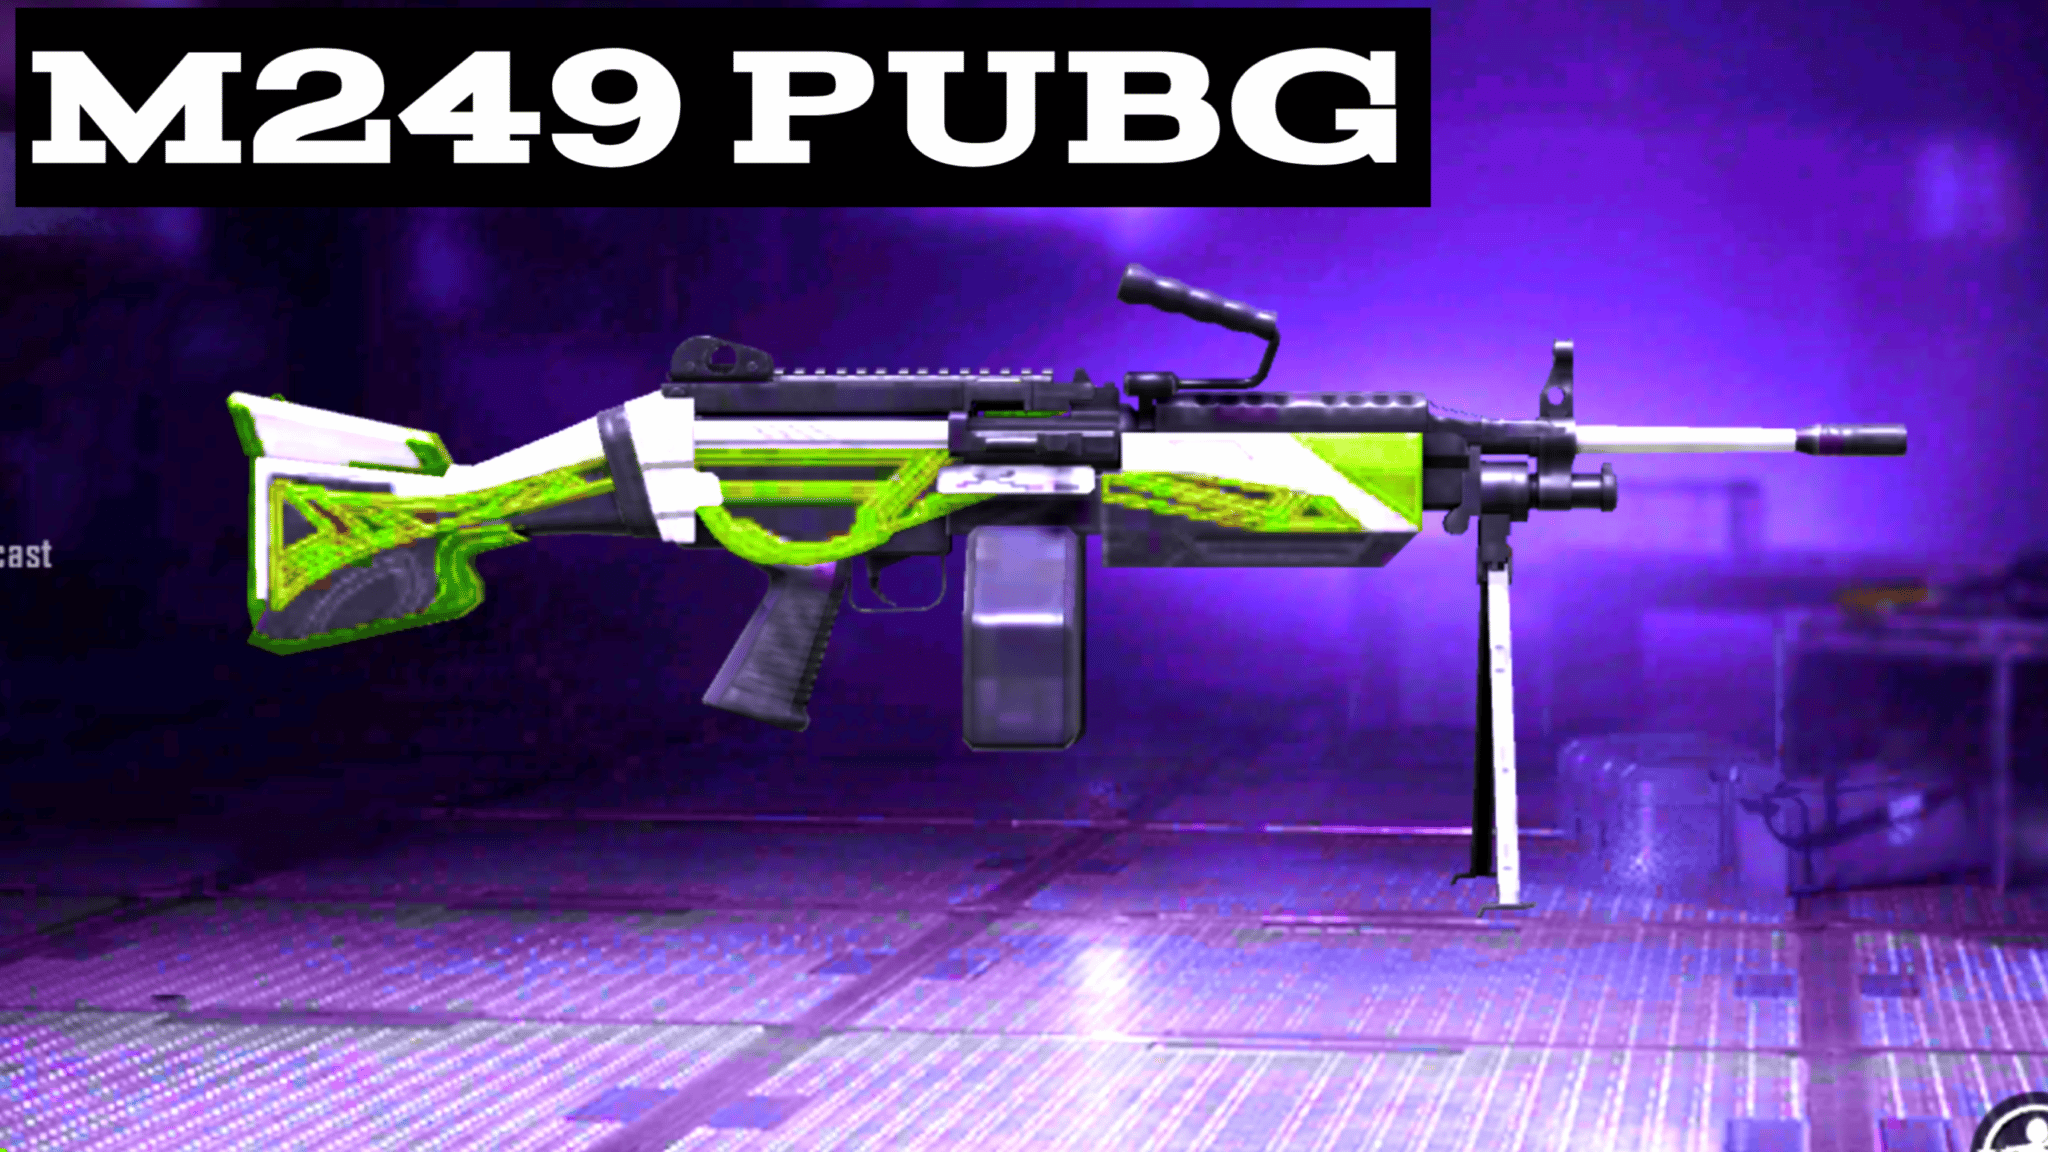 M249 PUBG